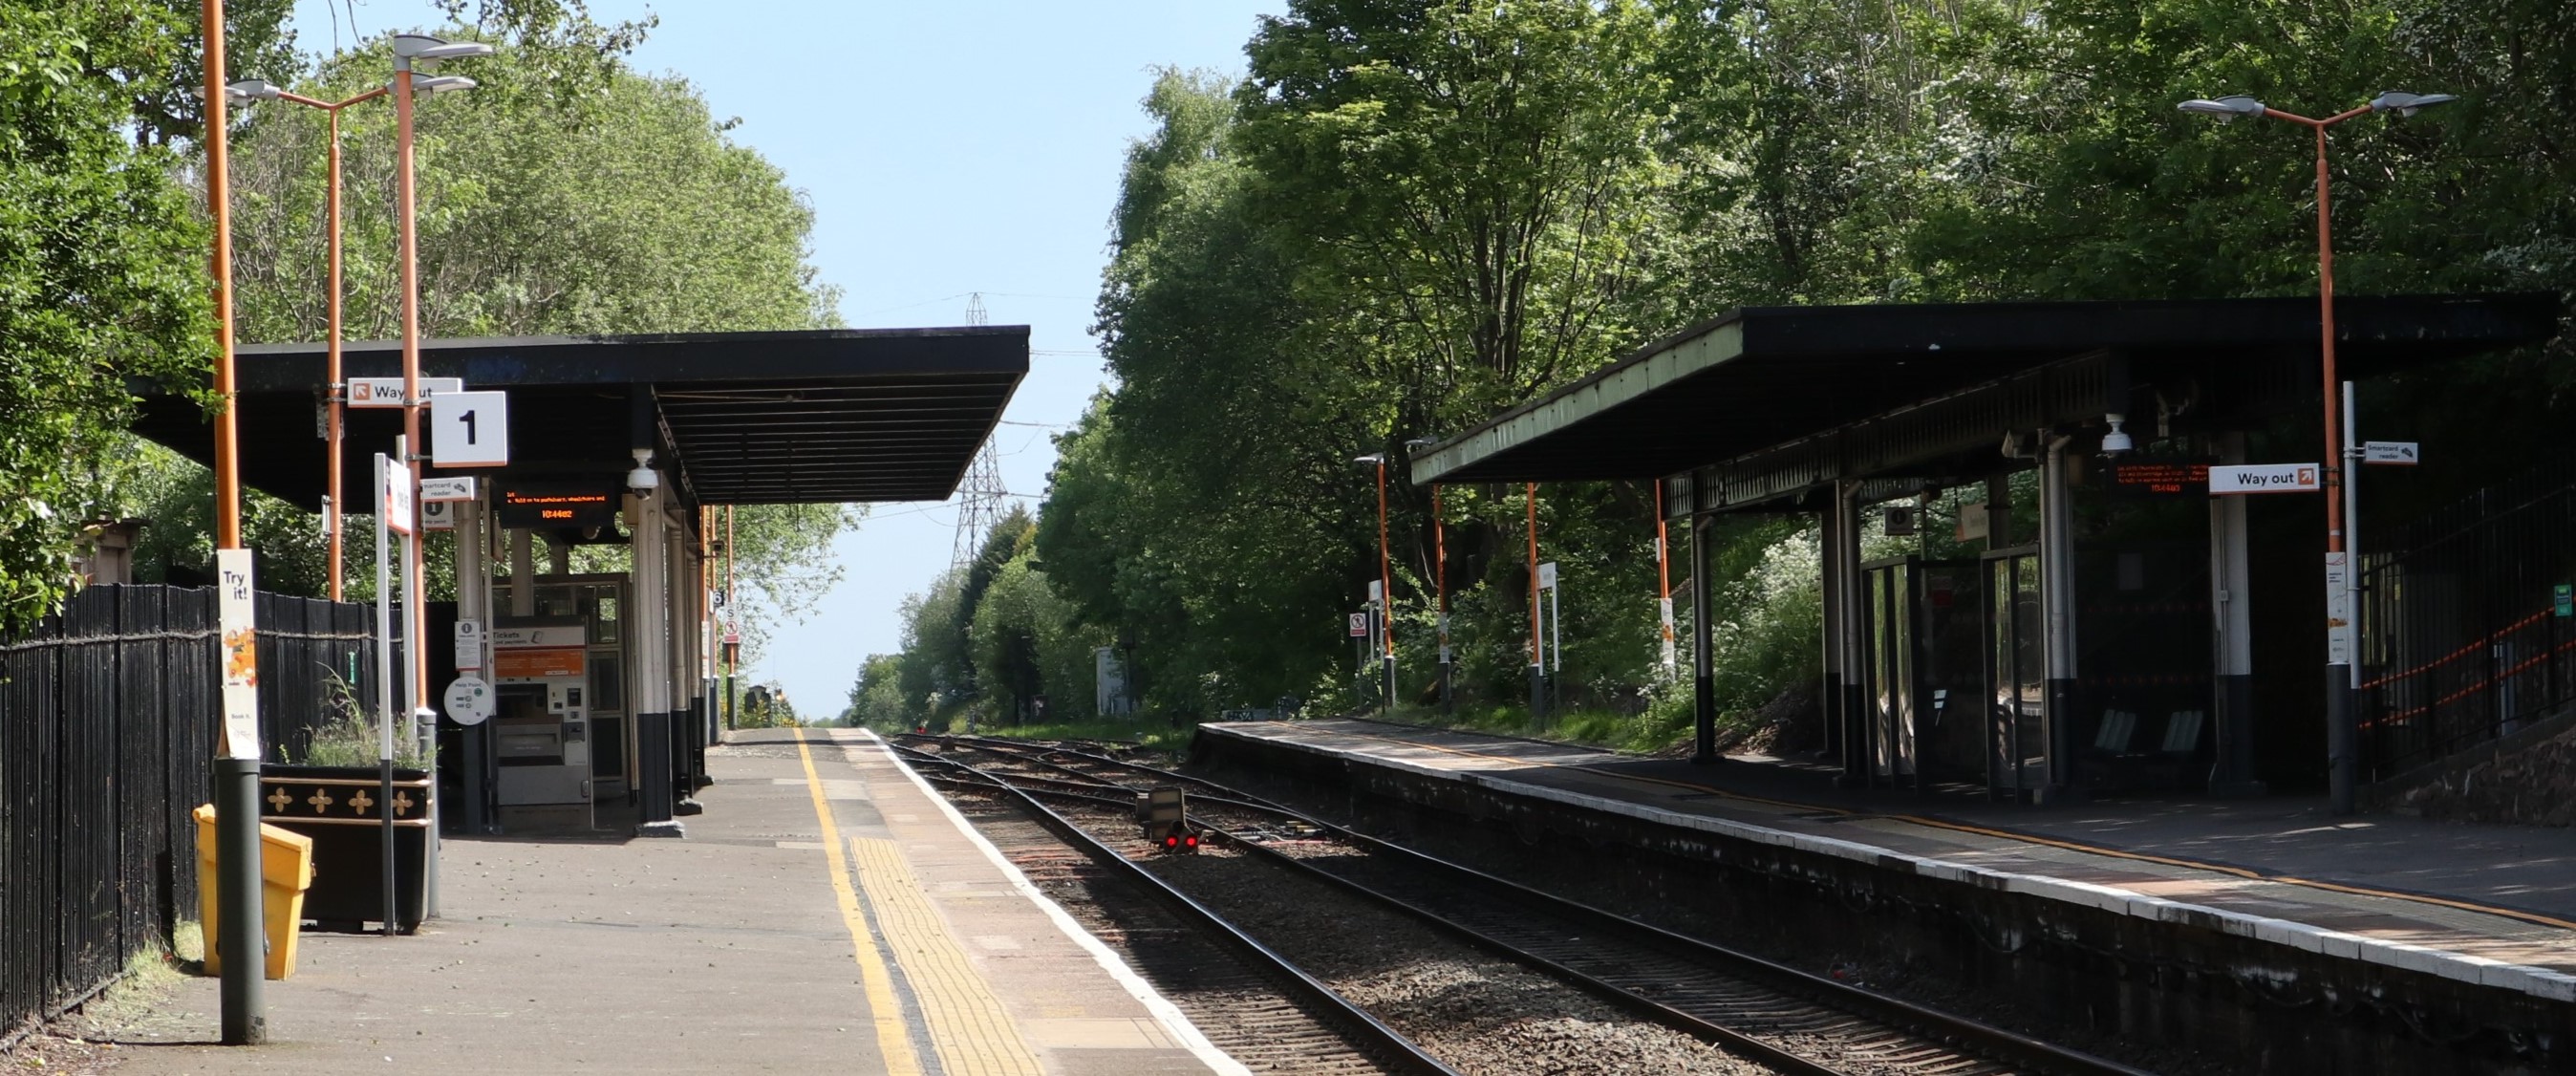 Rowley Regis railway station